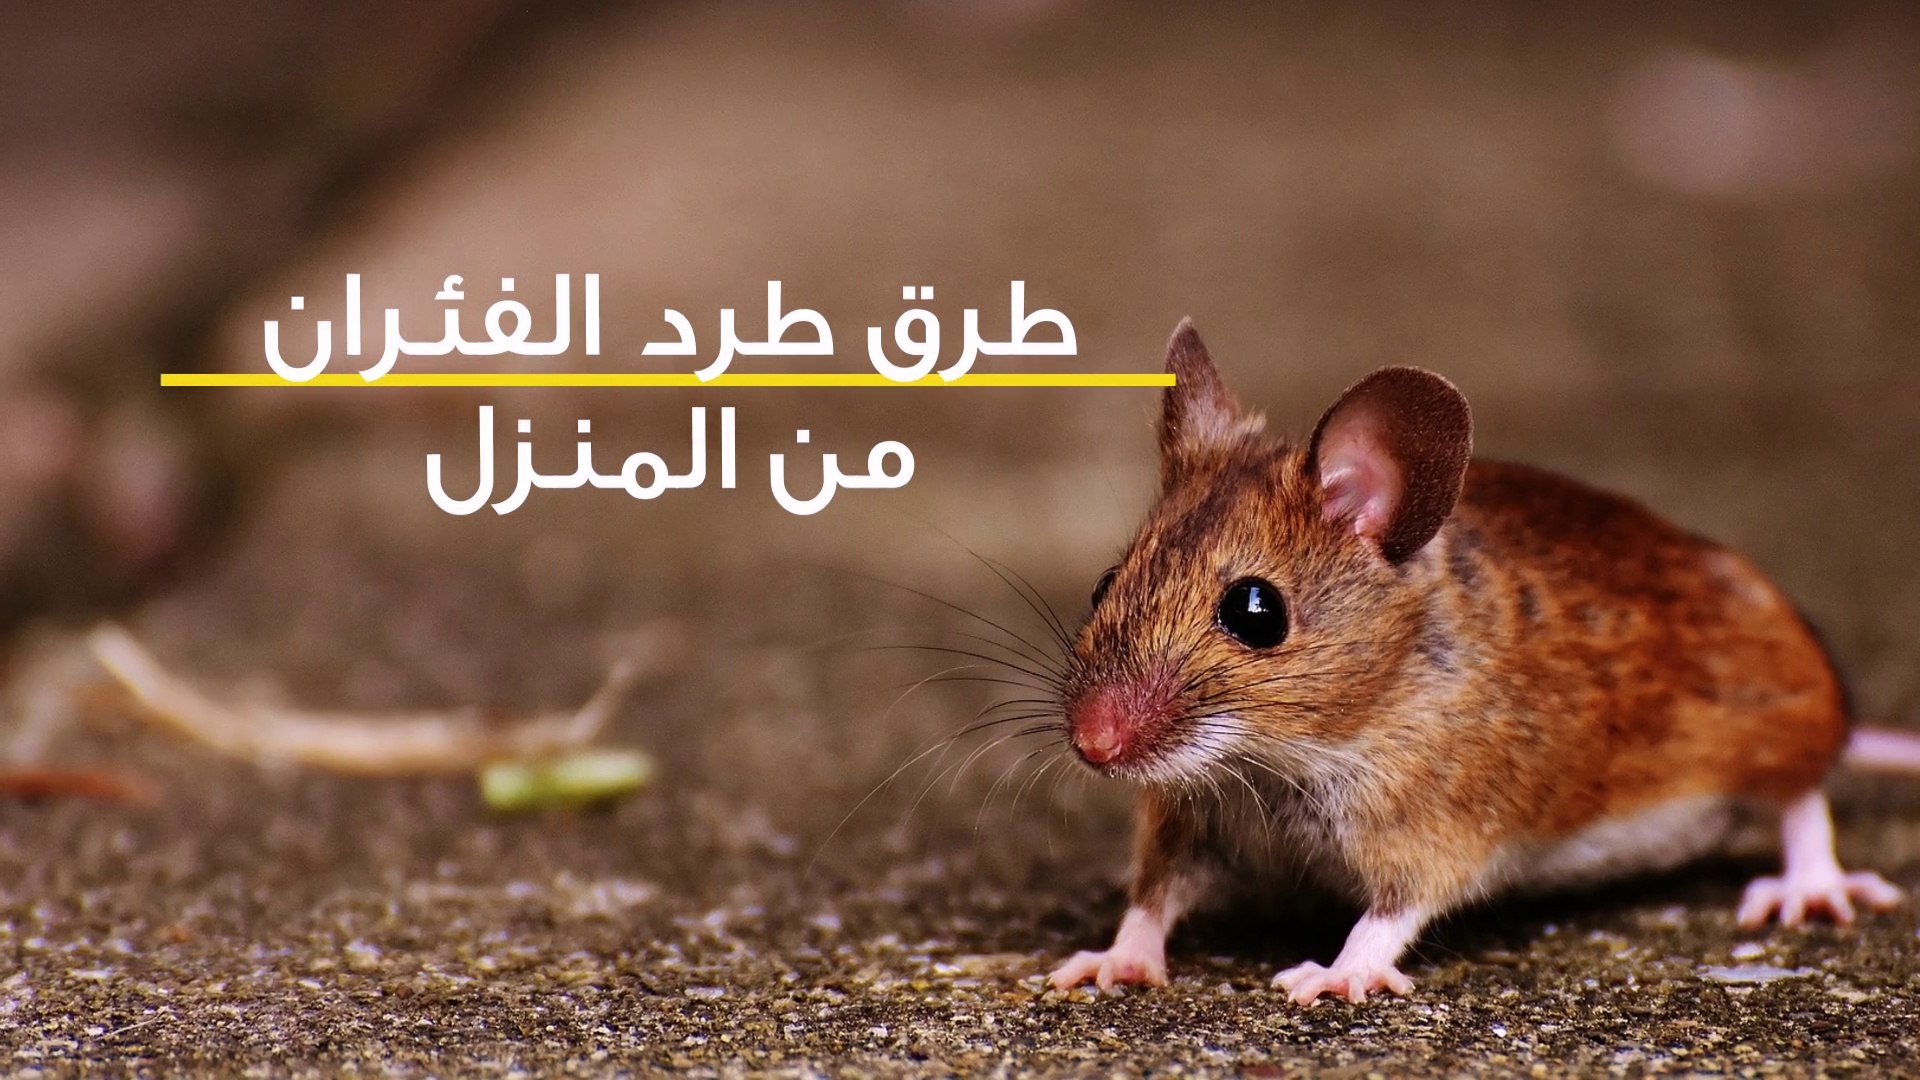 أقوي طرق لطرد الفئران من المنزل بدون عودة نهائياً بمكون فعال ومجرب 100%